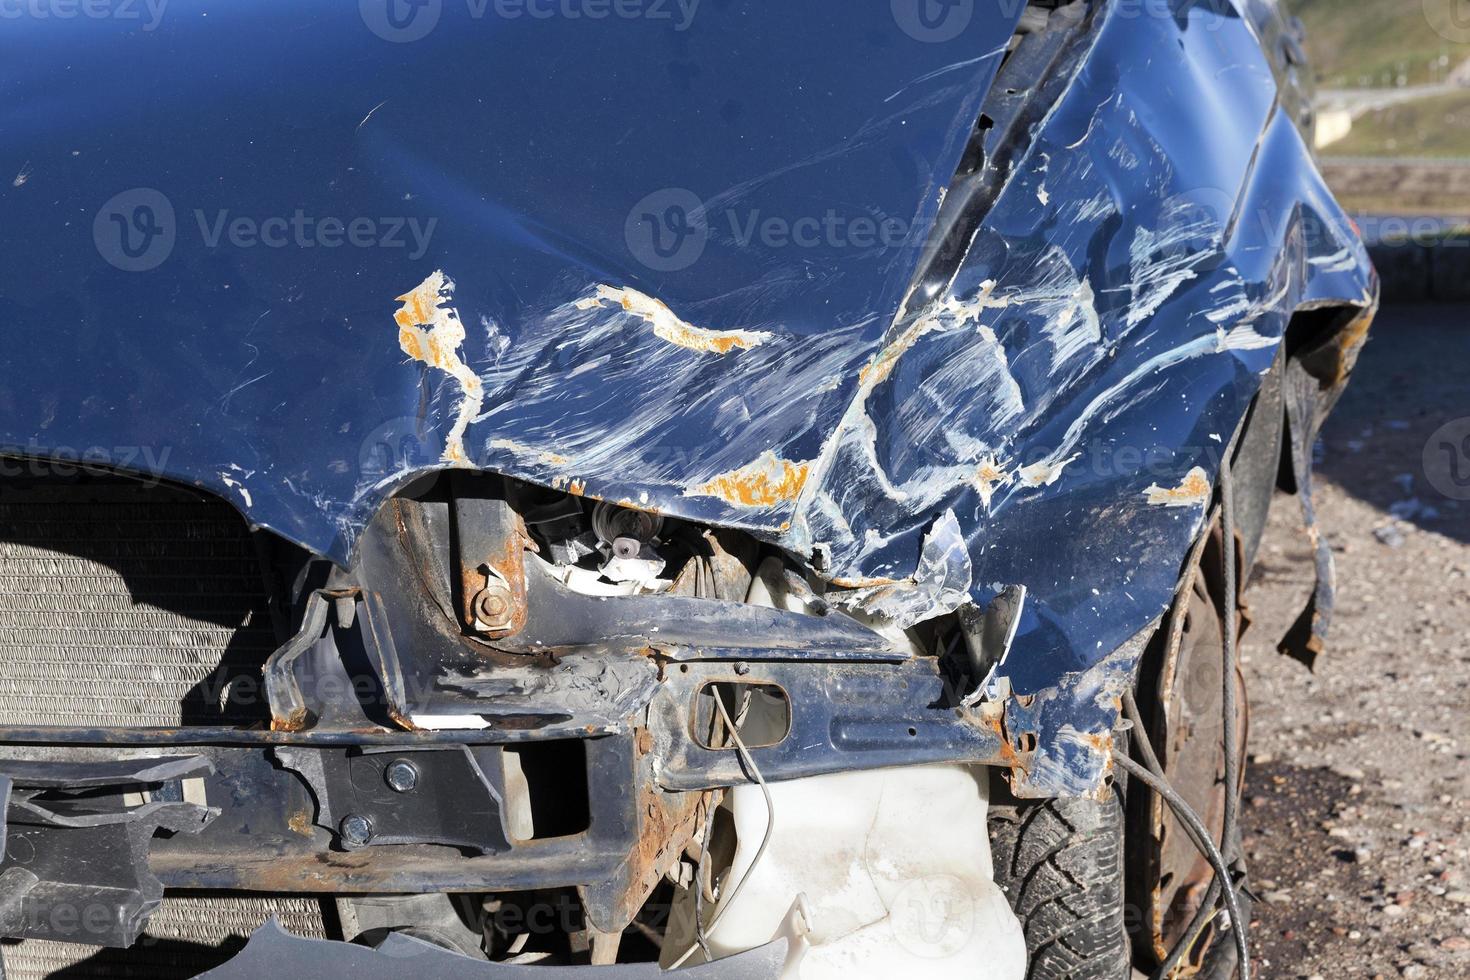 blauwe auto na een ongeval foto